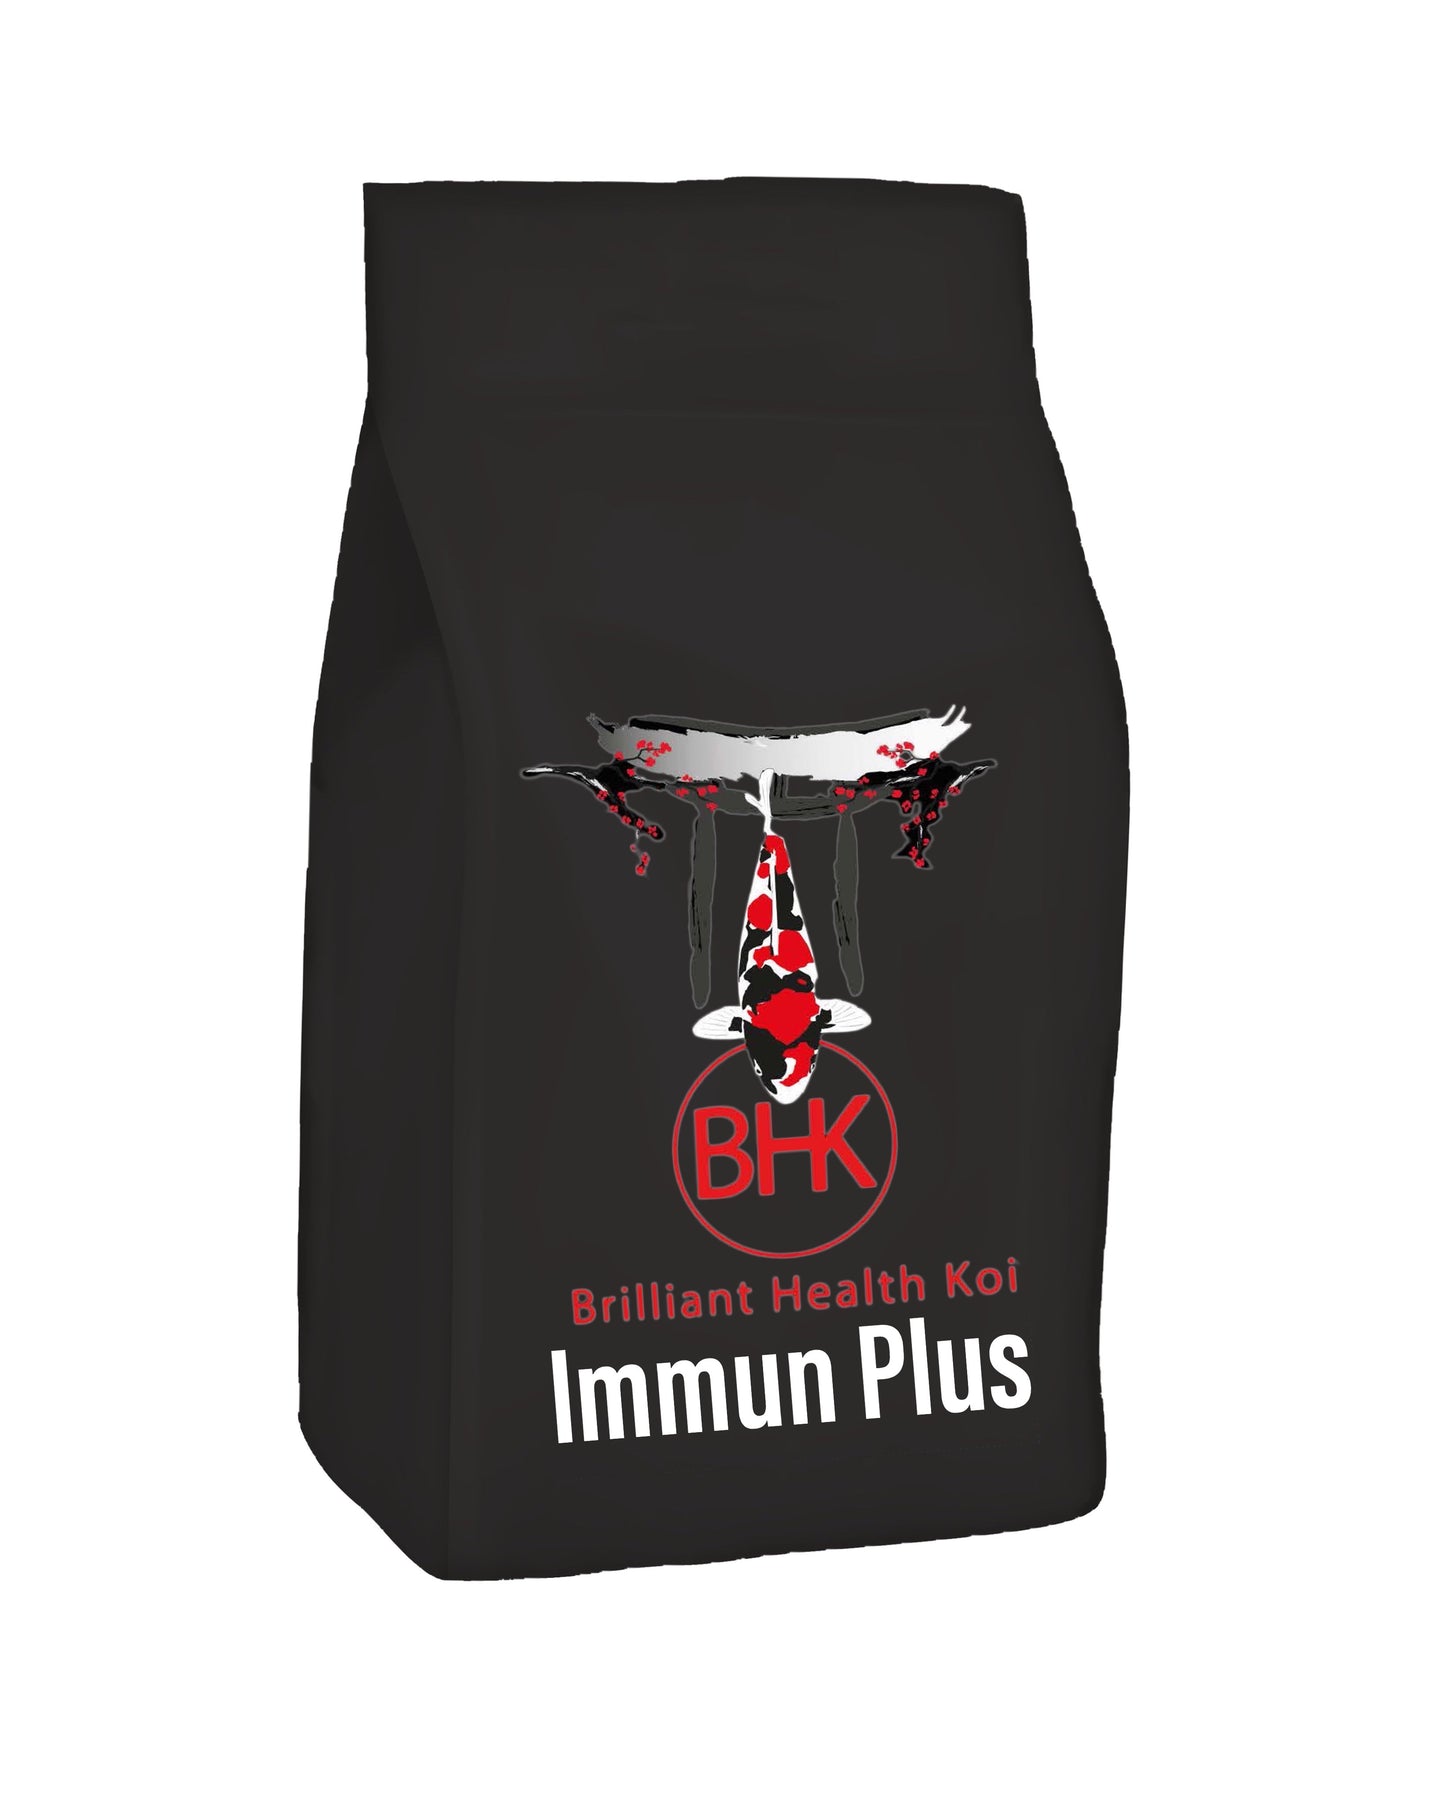 BHK Immune Plus